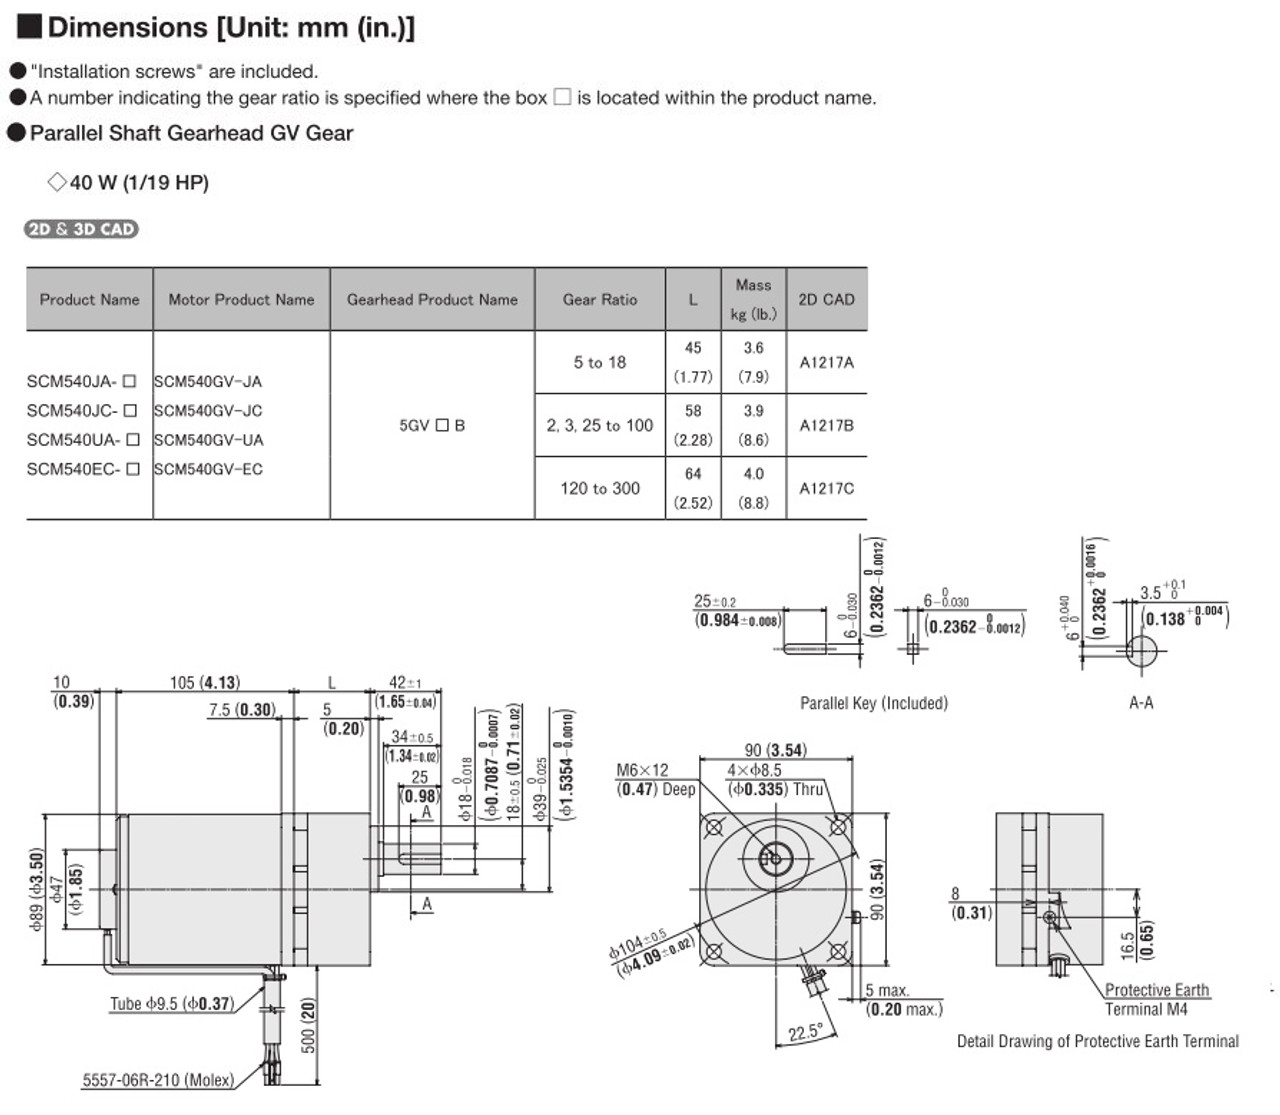 SCM540UA-120 - Dimensions